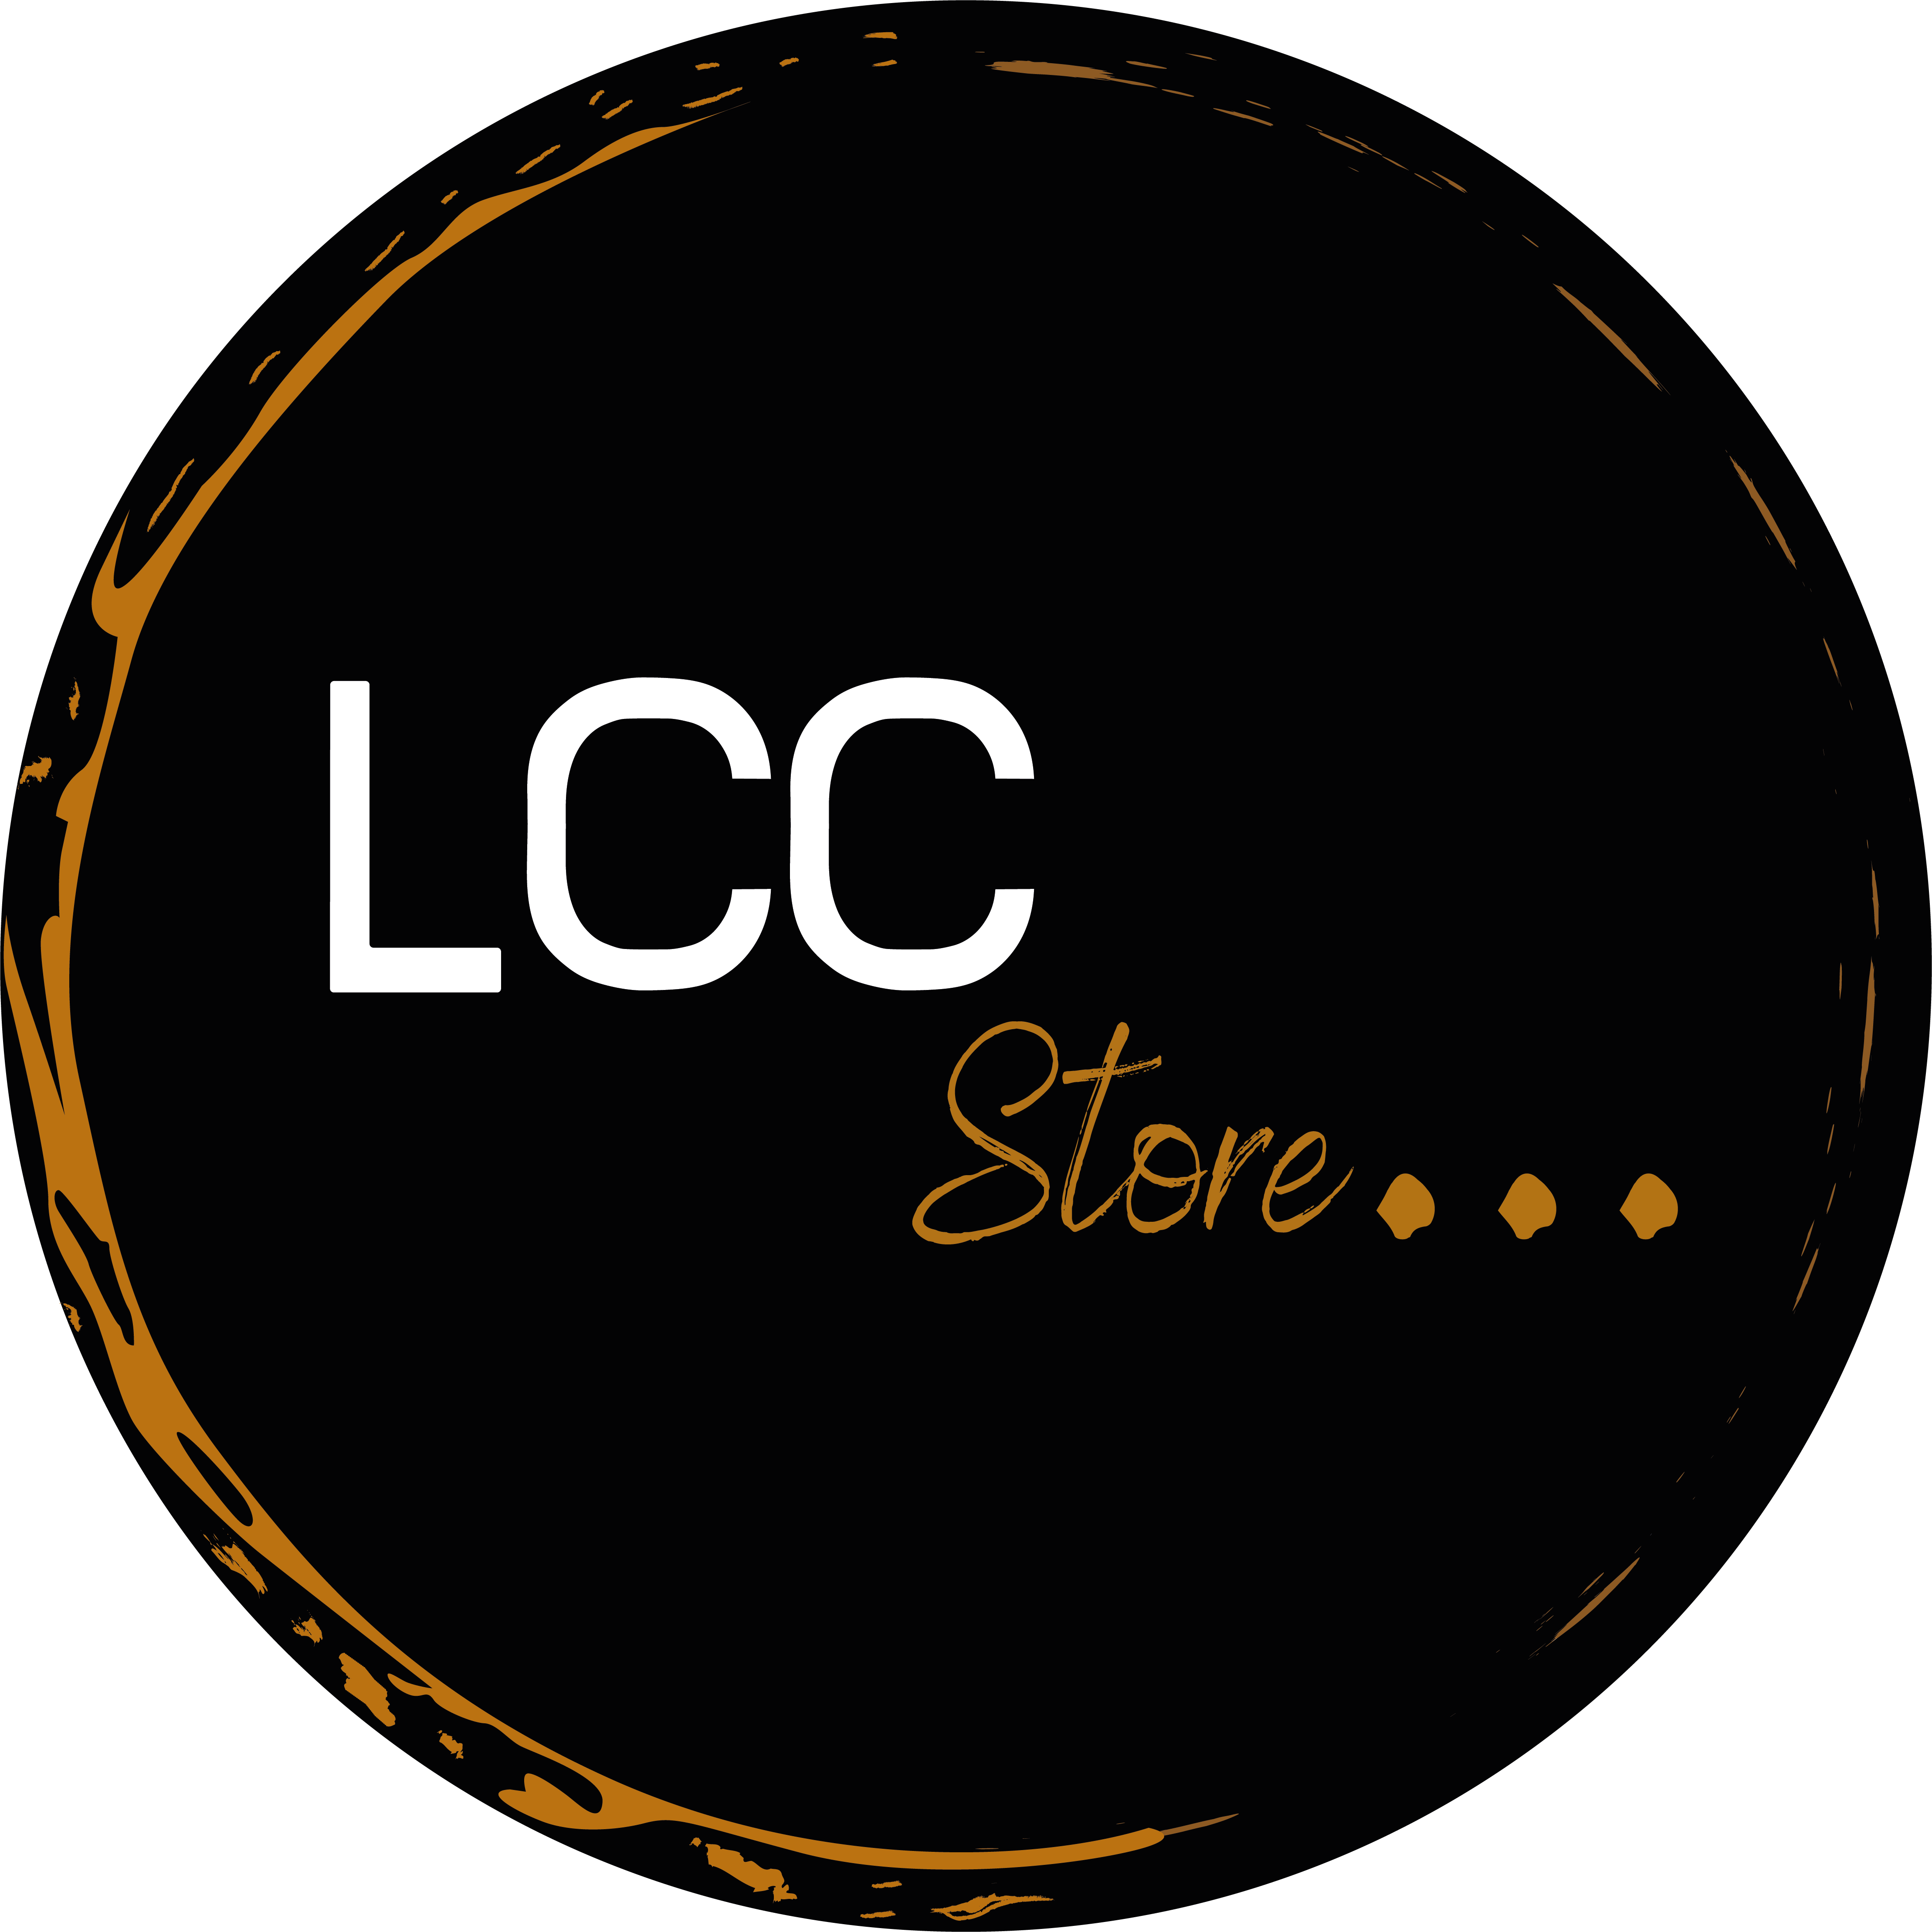 LCC Store